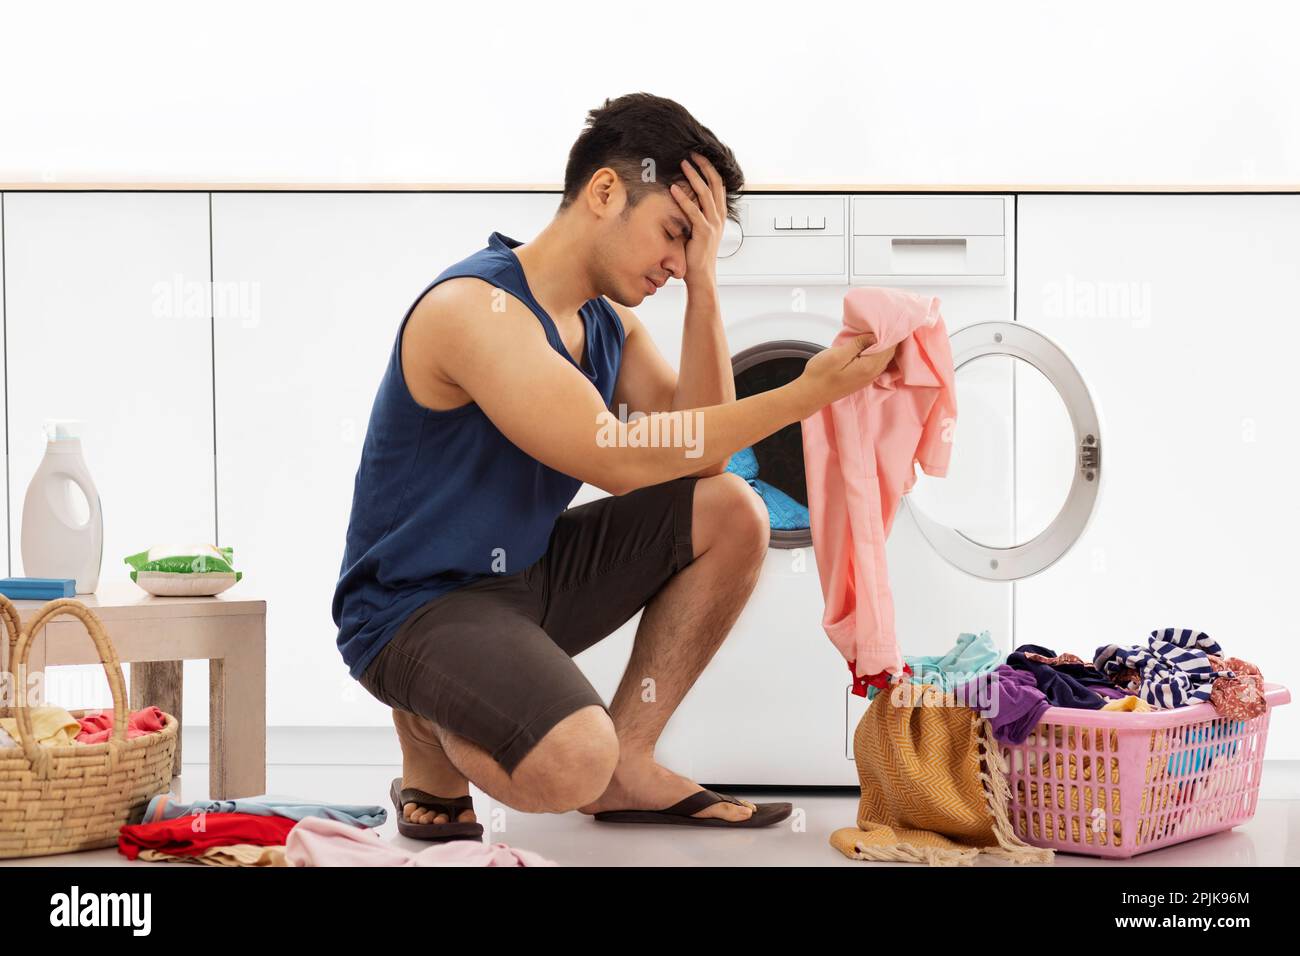 Porträt eines müden jungen Mannes, der Wäsche wäscht Stockfoto